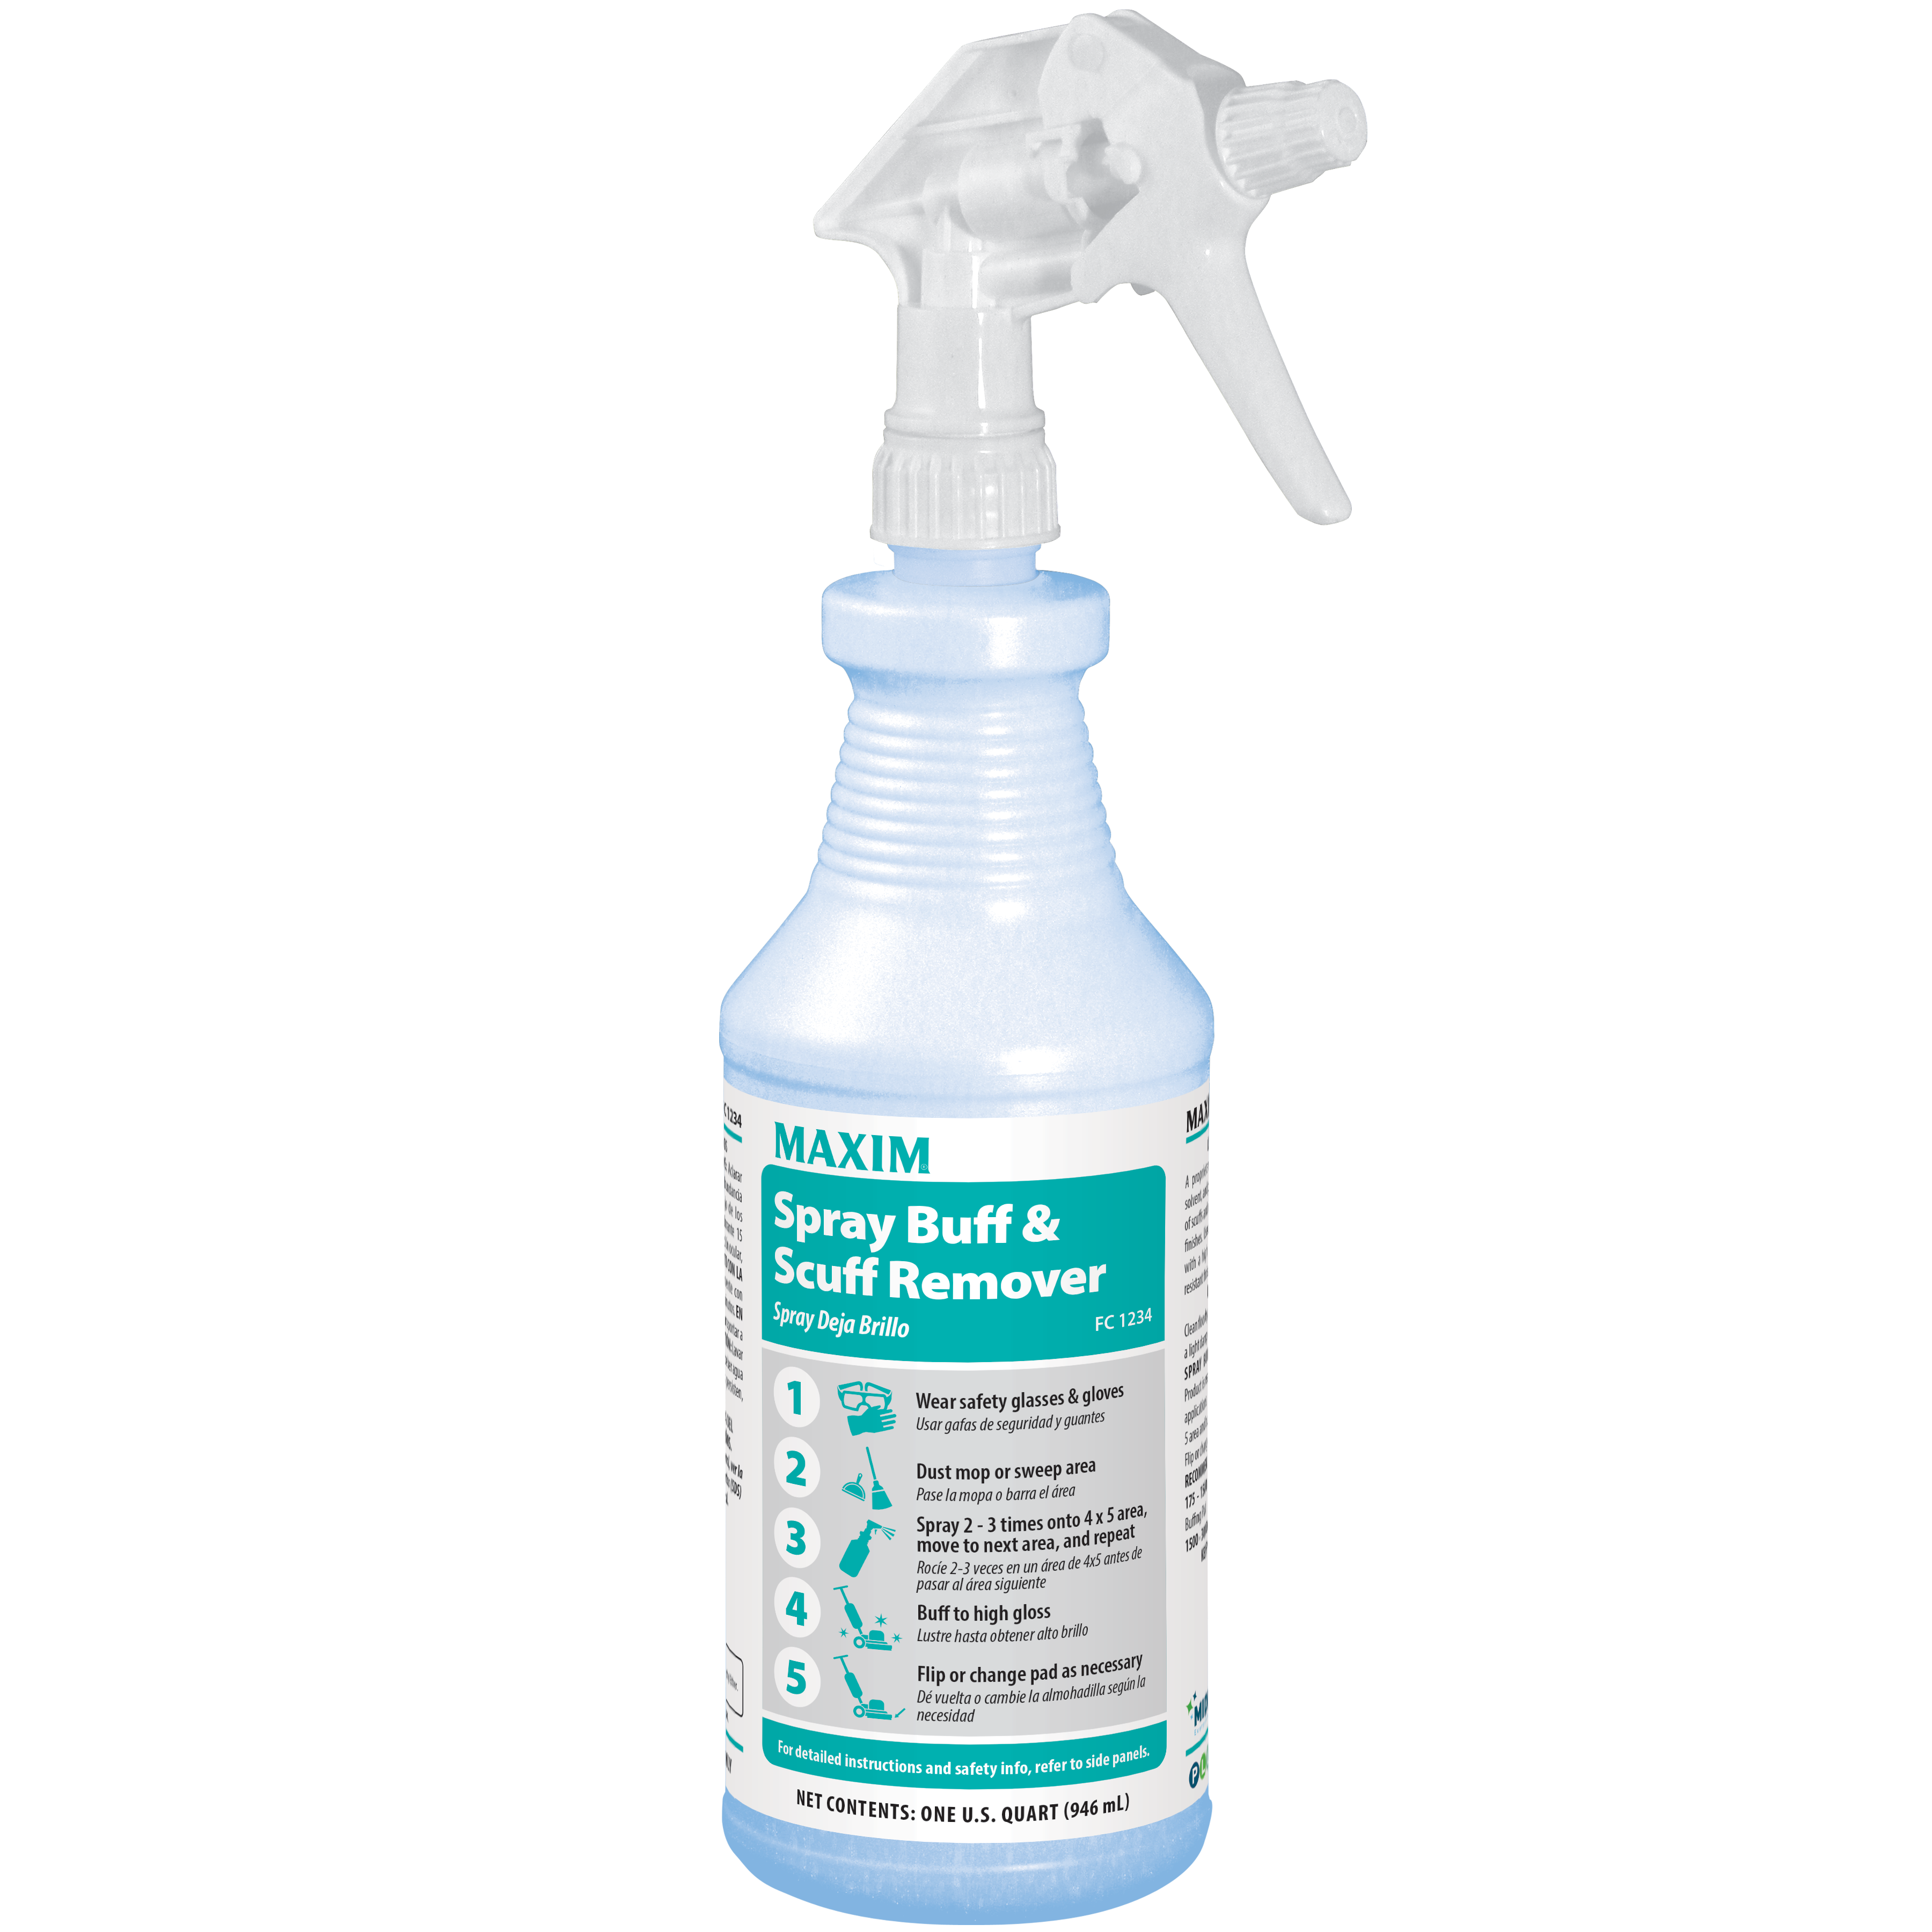 Spray Buff & Scuff Remover - Midlab, Inc.